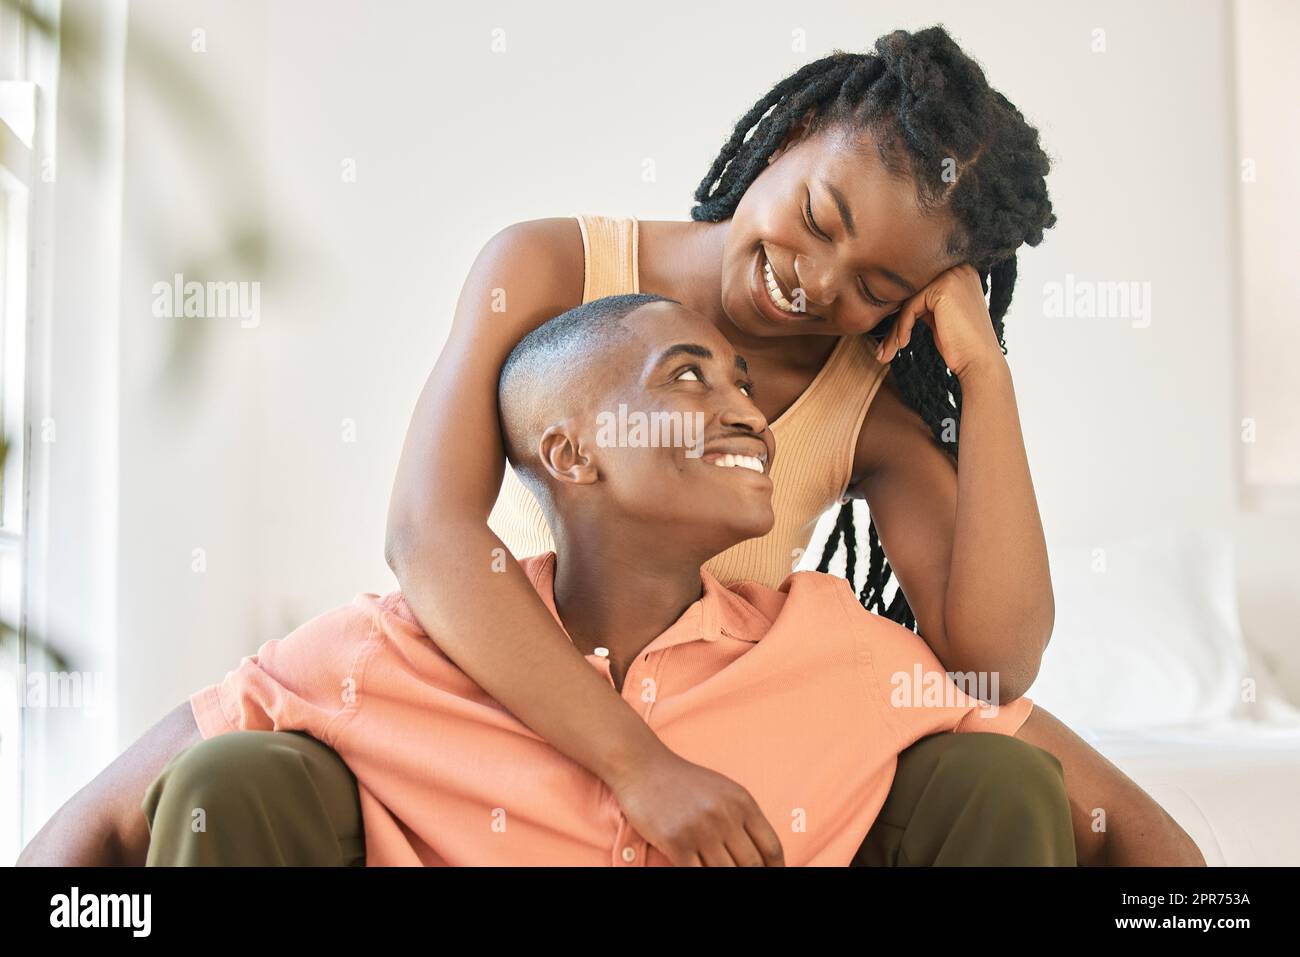 Ein junges, glückliches, sorgenfreies und fröhliches afroamerikanisches Paar, das sich zu Hause anfreundet und eine entspannte Zeit zusammen genießt. Eine schwarze Frau, die lächelt, während sie sich umarmt und ihren Freund ansieht, der zusammen sitzt Stockfoto